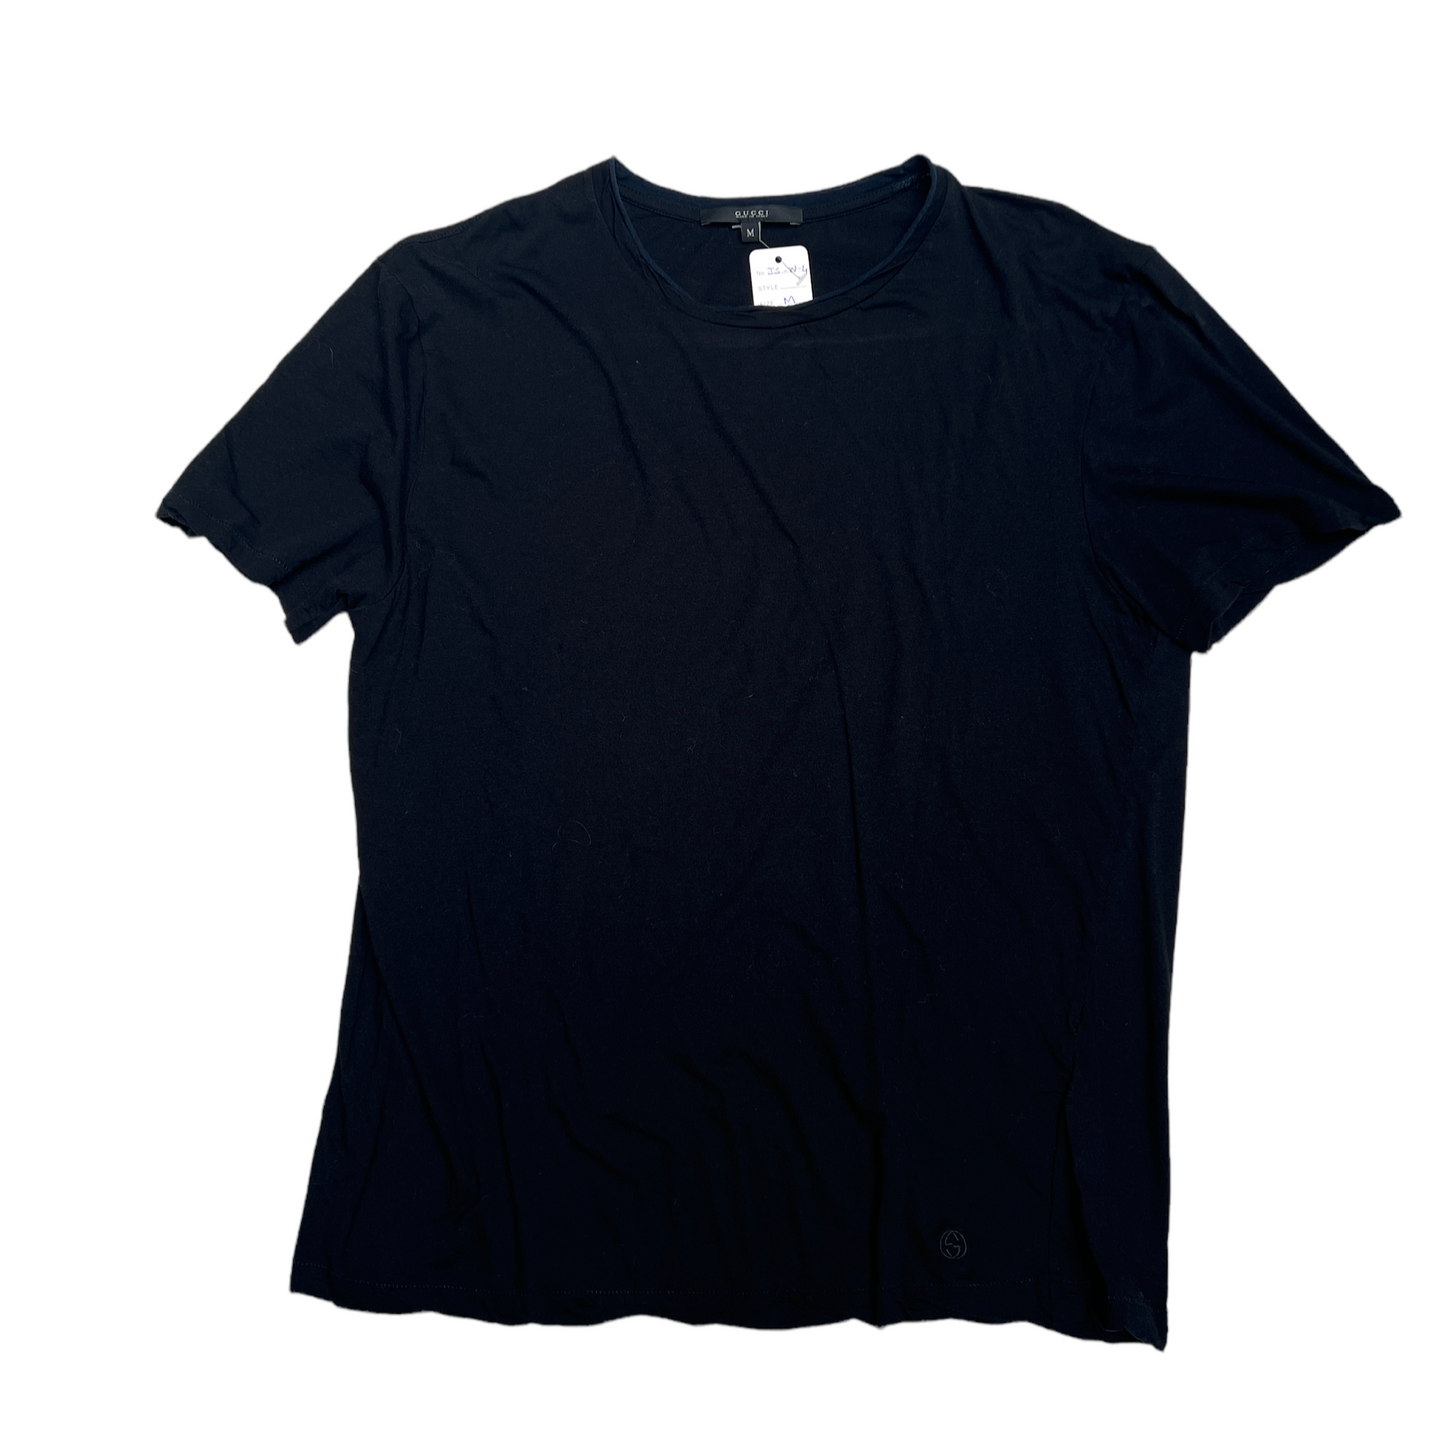 Black cotton T-shirt - M